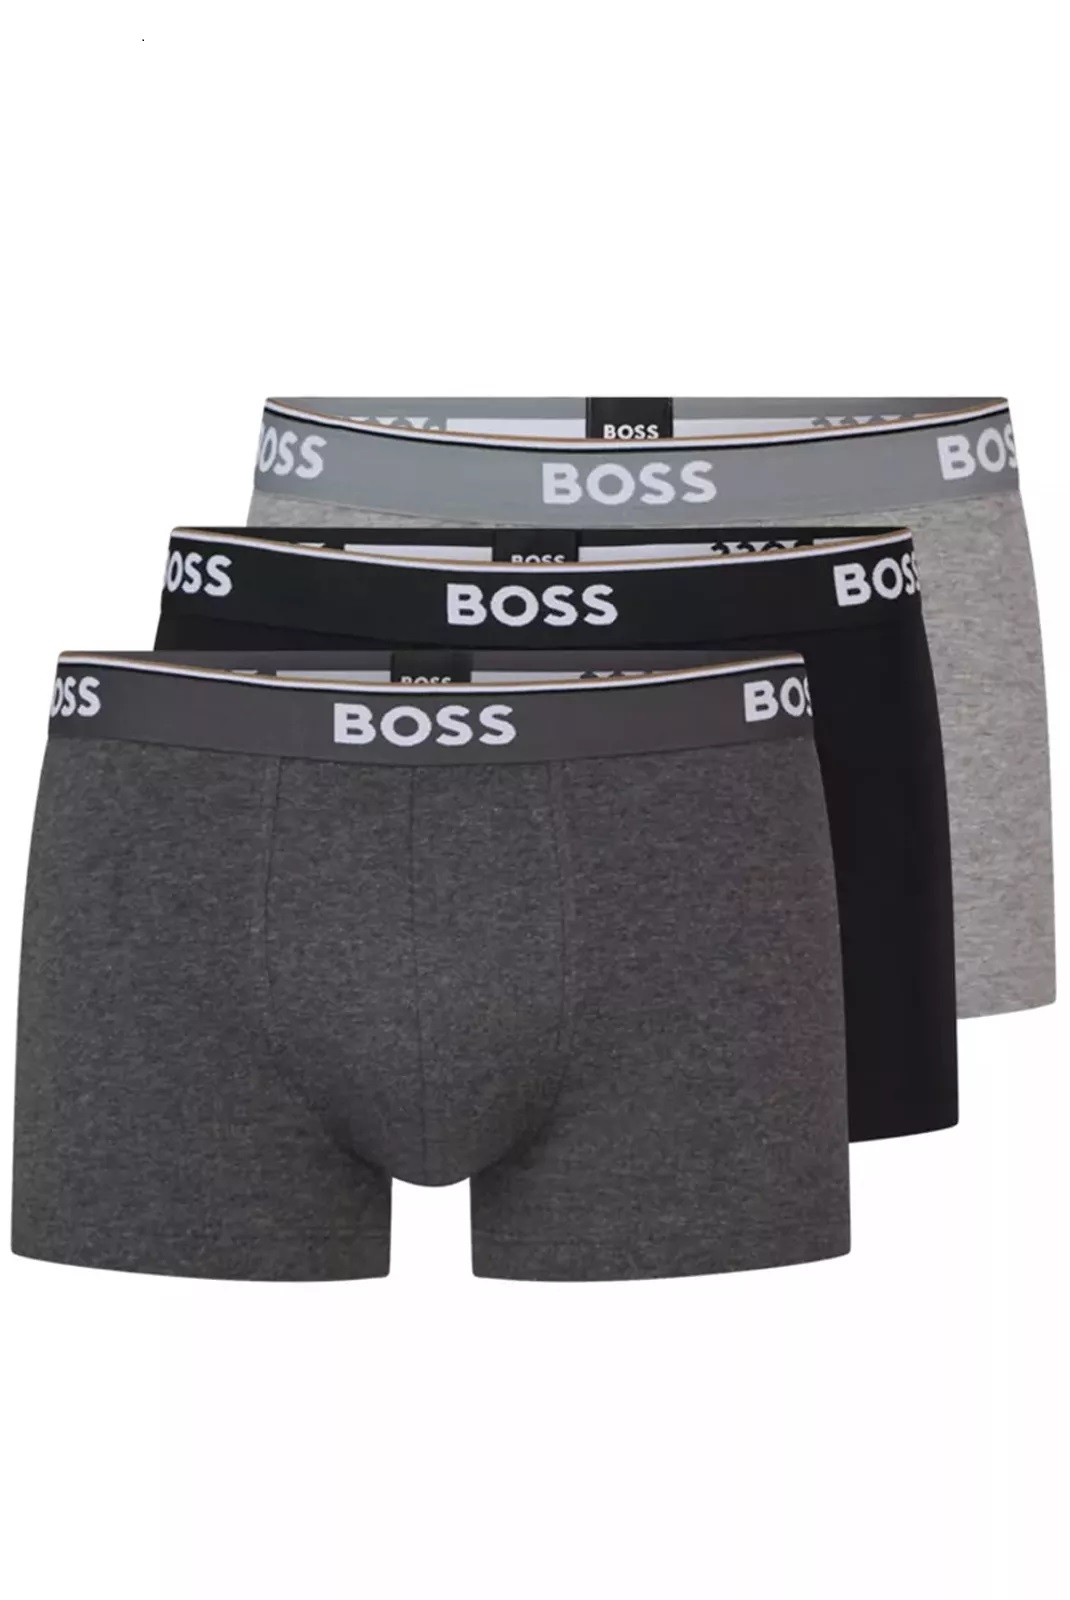 Hugo Boss pánské boxerky 3pack černé a šedé Velikost: L